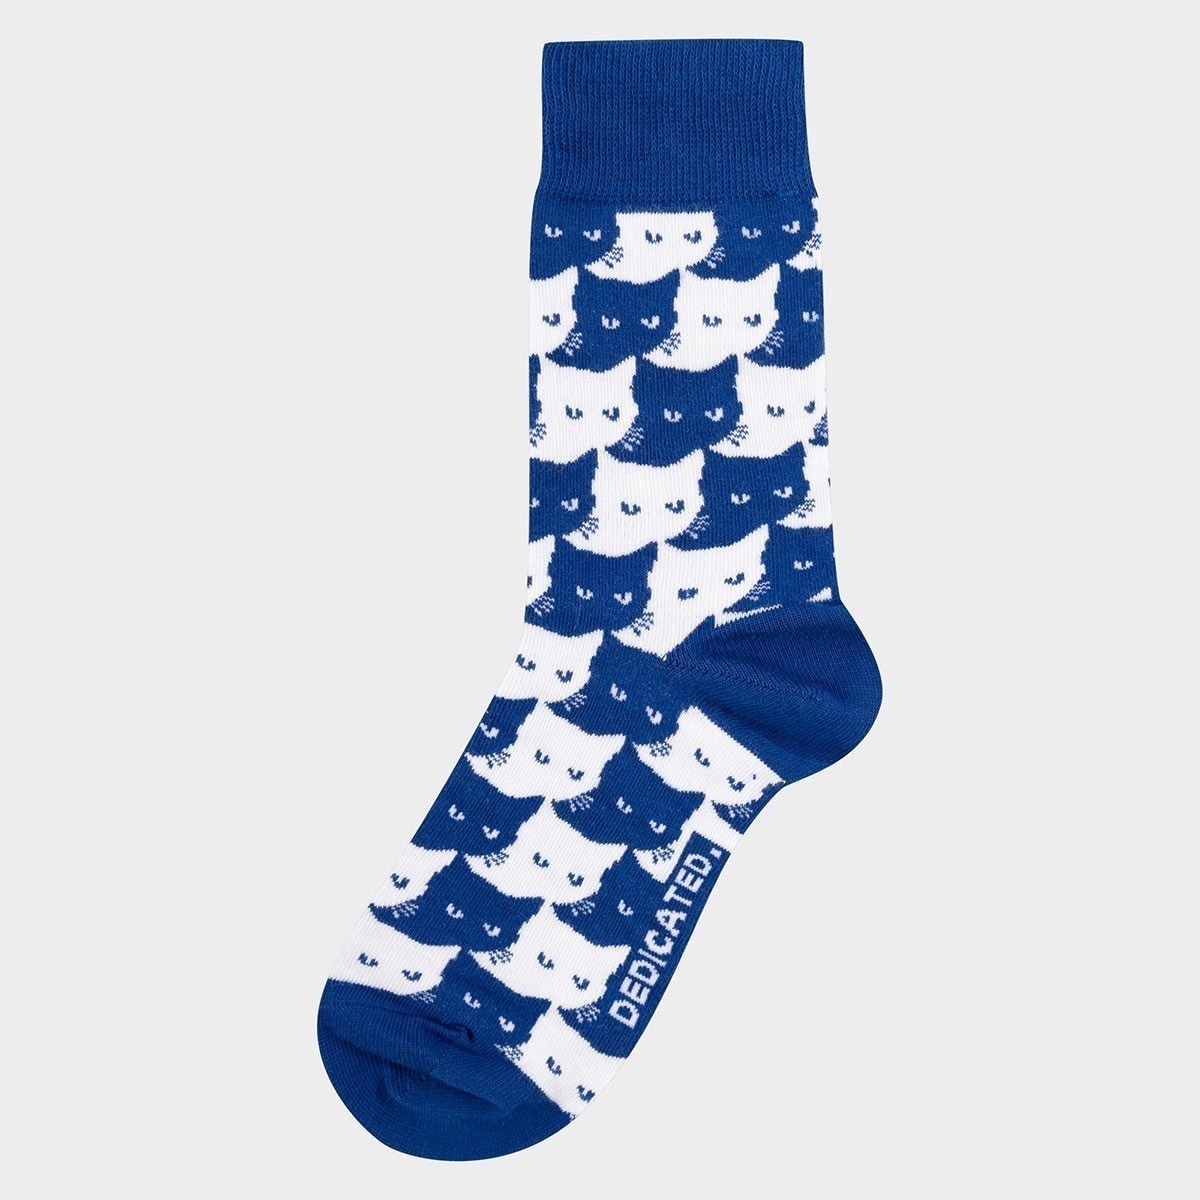 Socken mit Katzen Motiv aus Bio-Baumwolle in Blau.